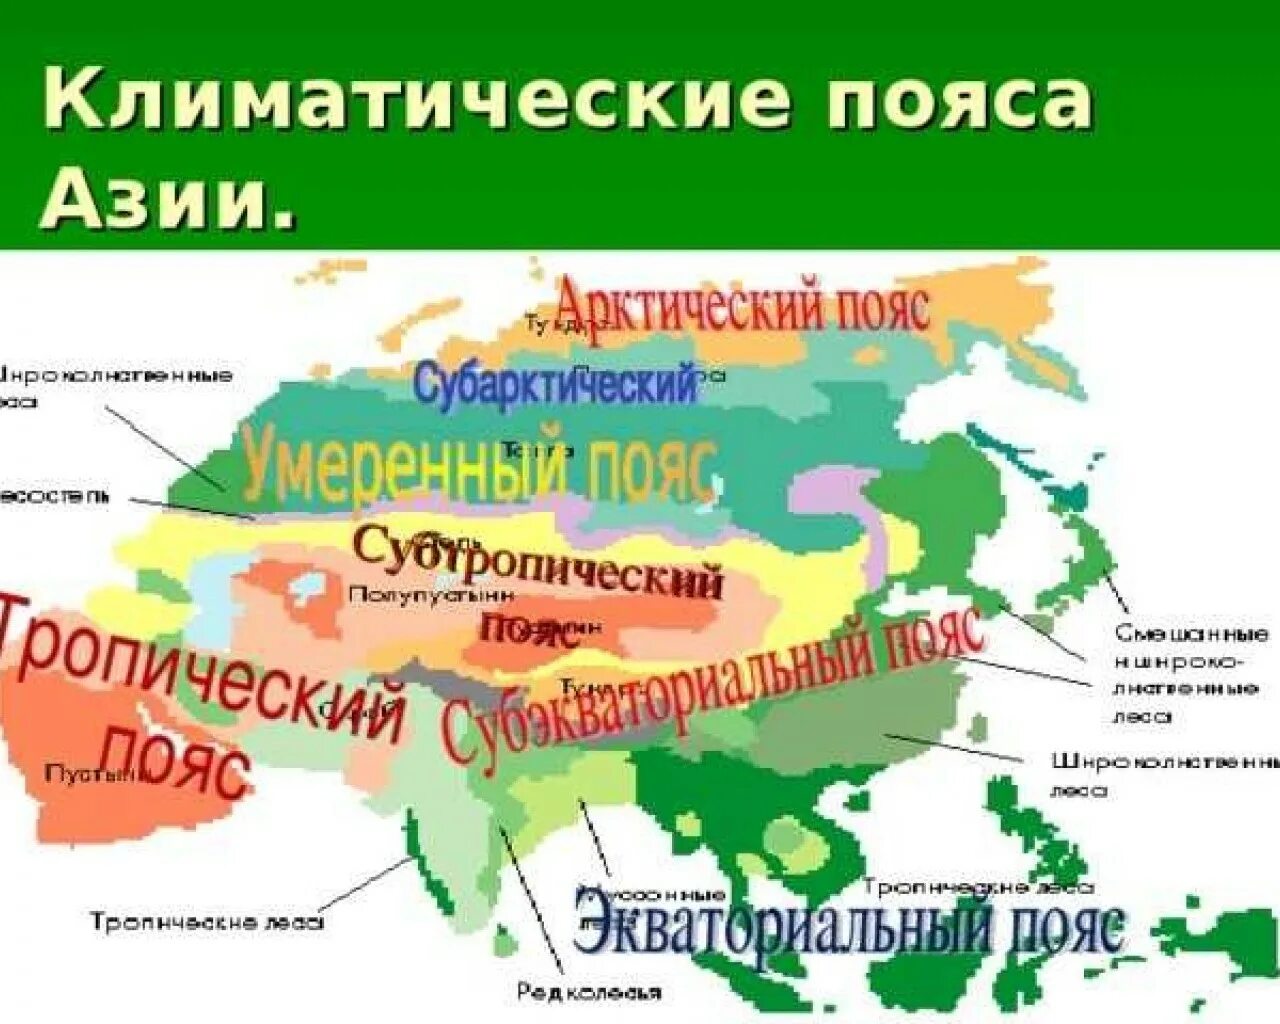 Положение евразии в климатических поясах. Центральная Азия карта климатические пояса. Карта климат поясов Евразии. Климатические пояса Юго Восточной Азии. Карта климатических поясов Евразии.